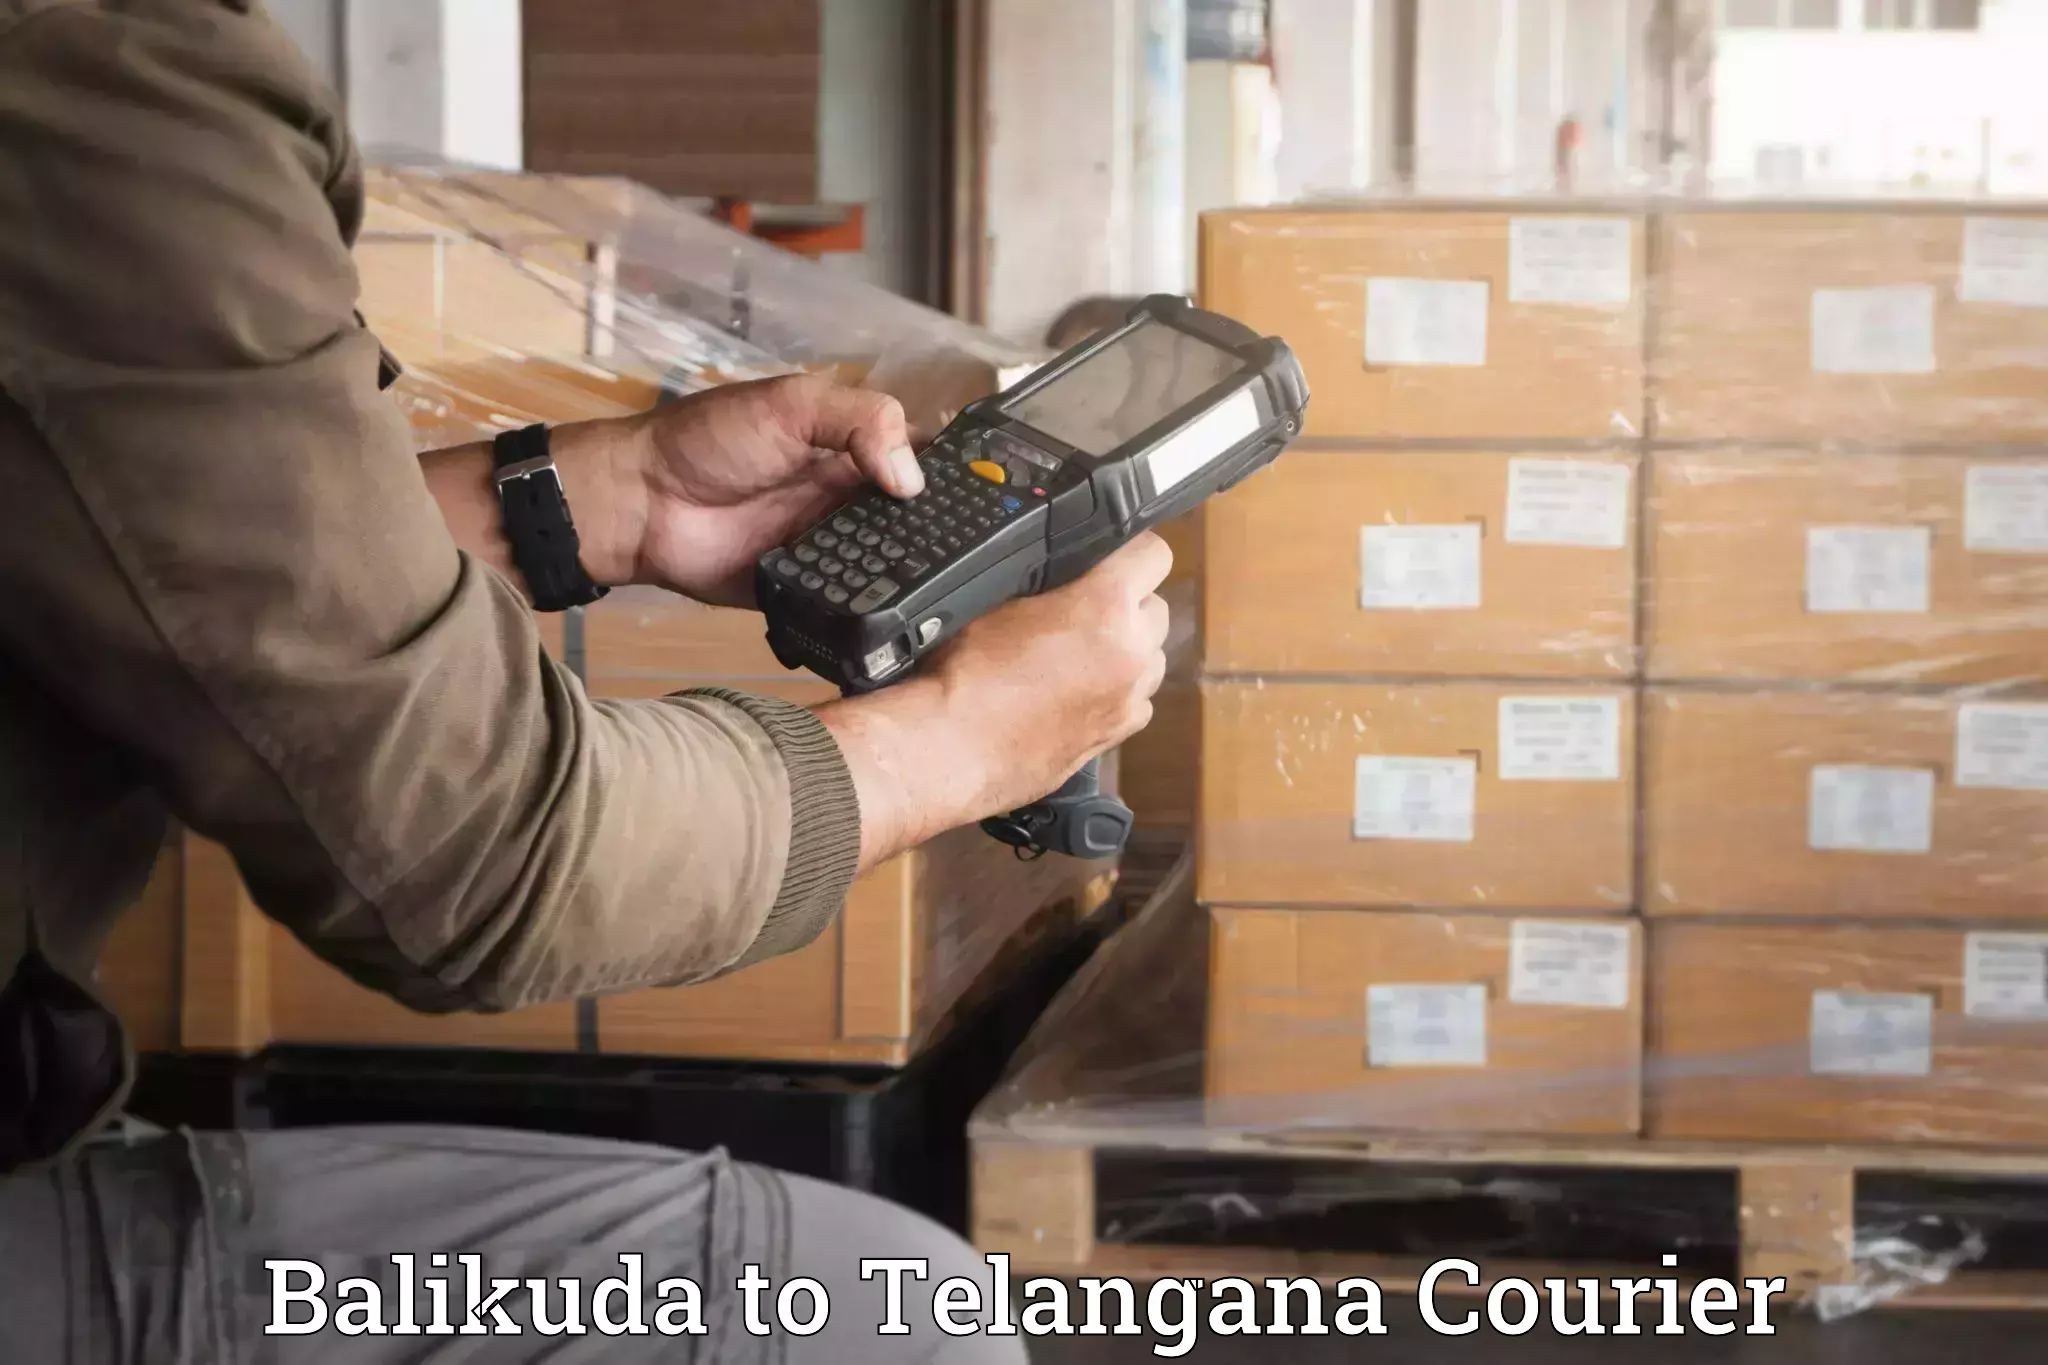 Reliable movers Balikuda to Telangana